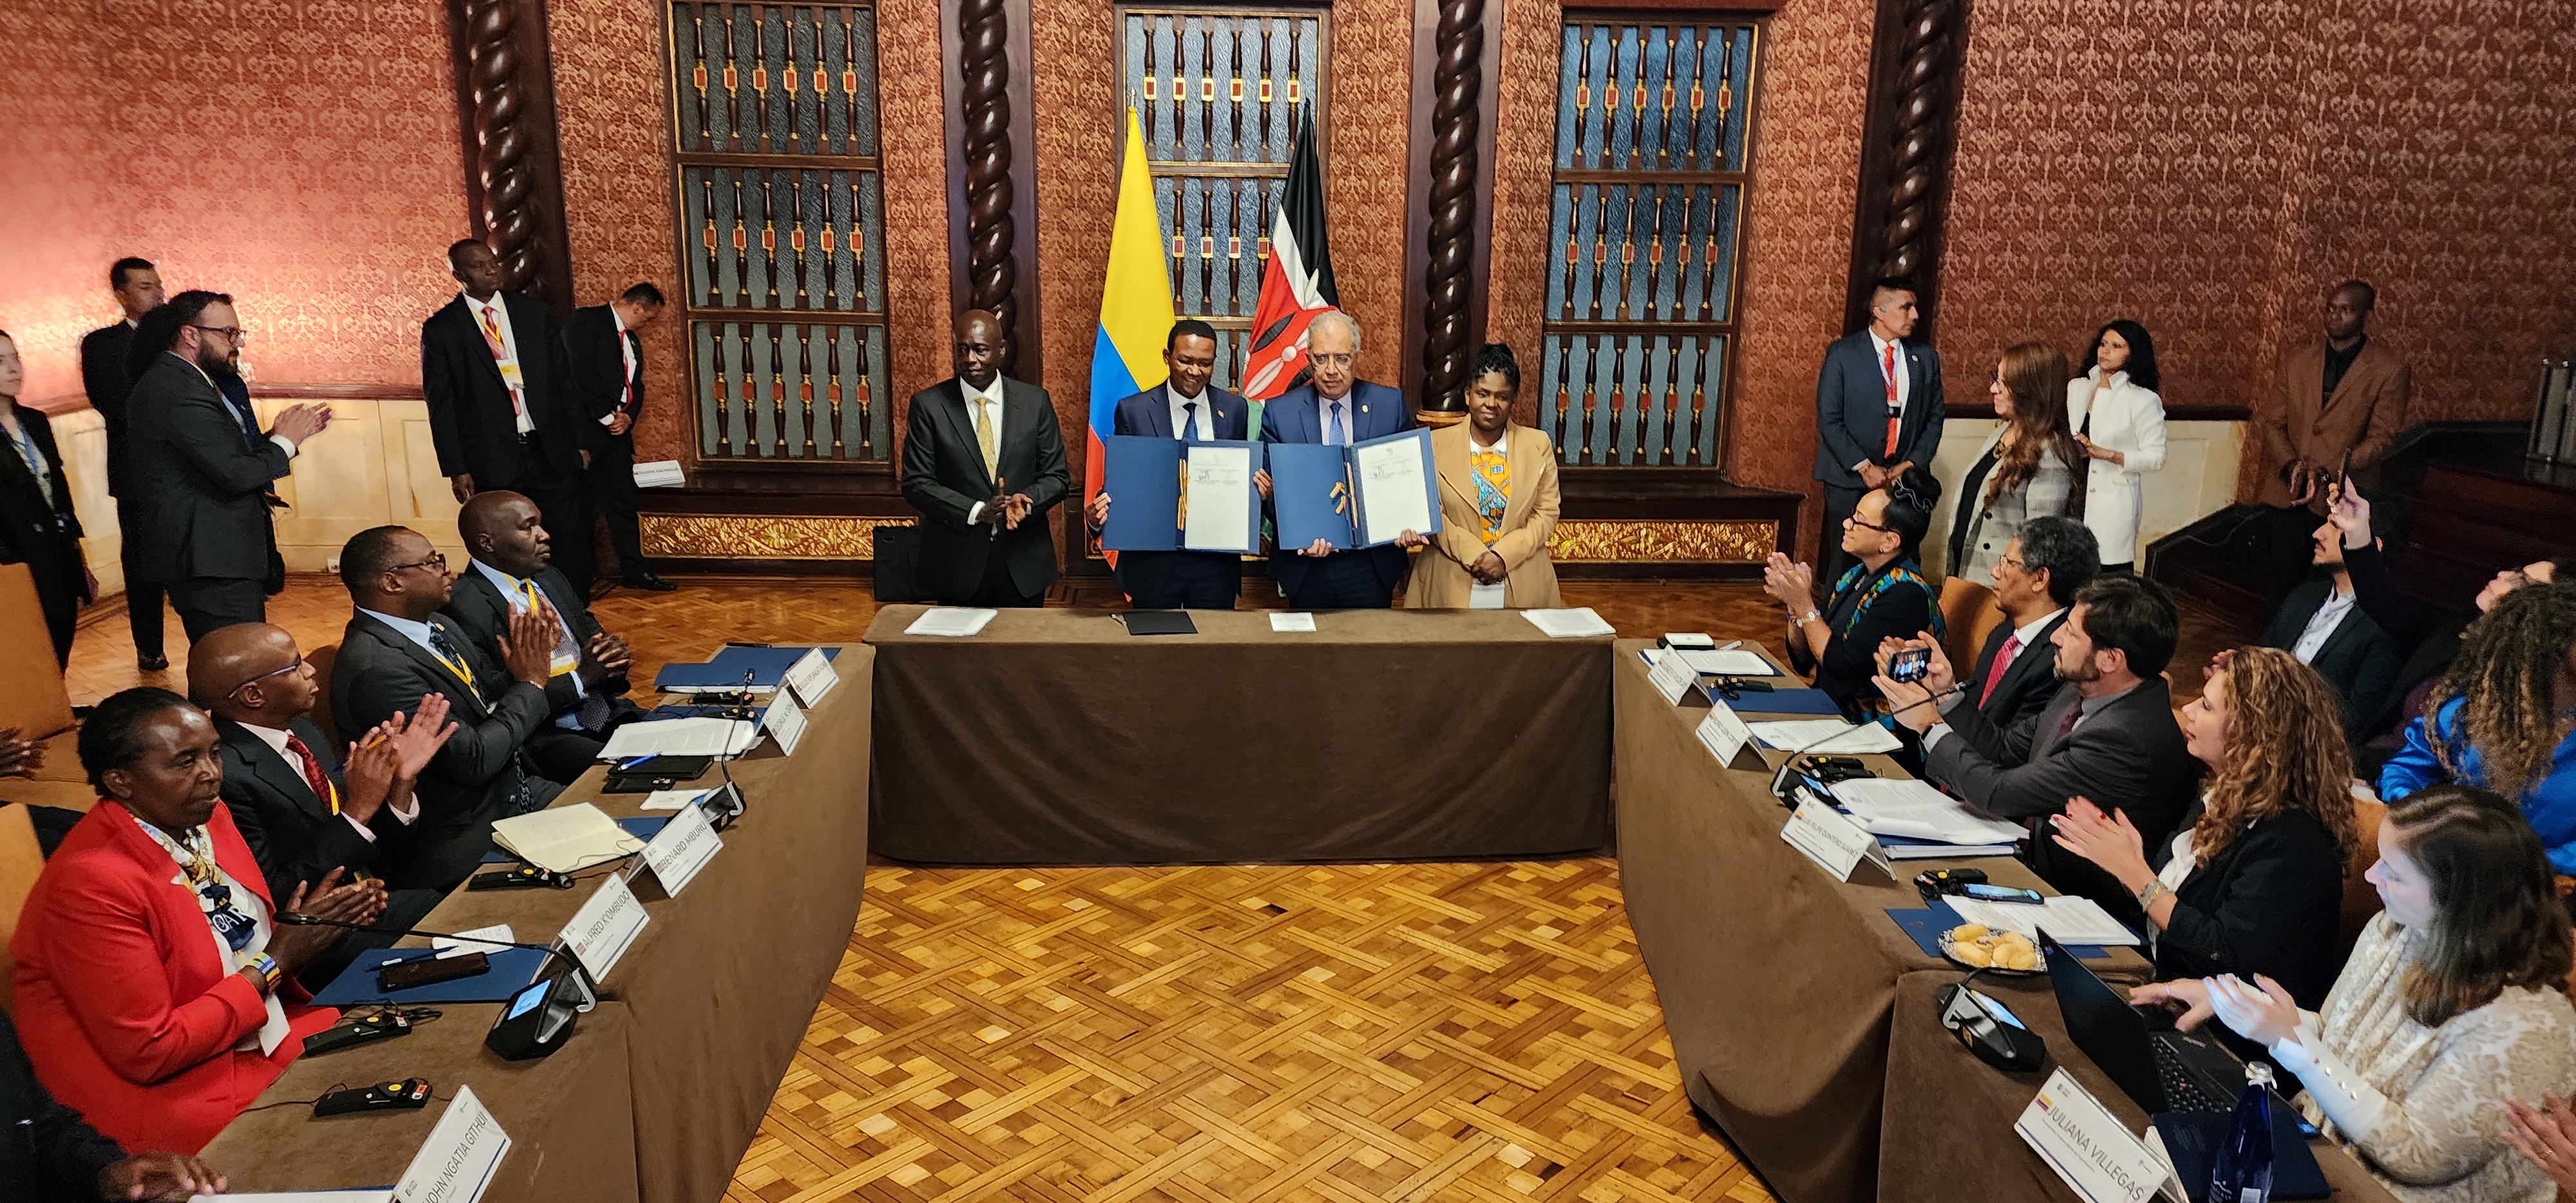 Los representantes de los gobiernos de Kenia y Colombia firmaron los acuerdos que incluyen importantes iniciativas en materia de medio amiente, turismo y cultura